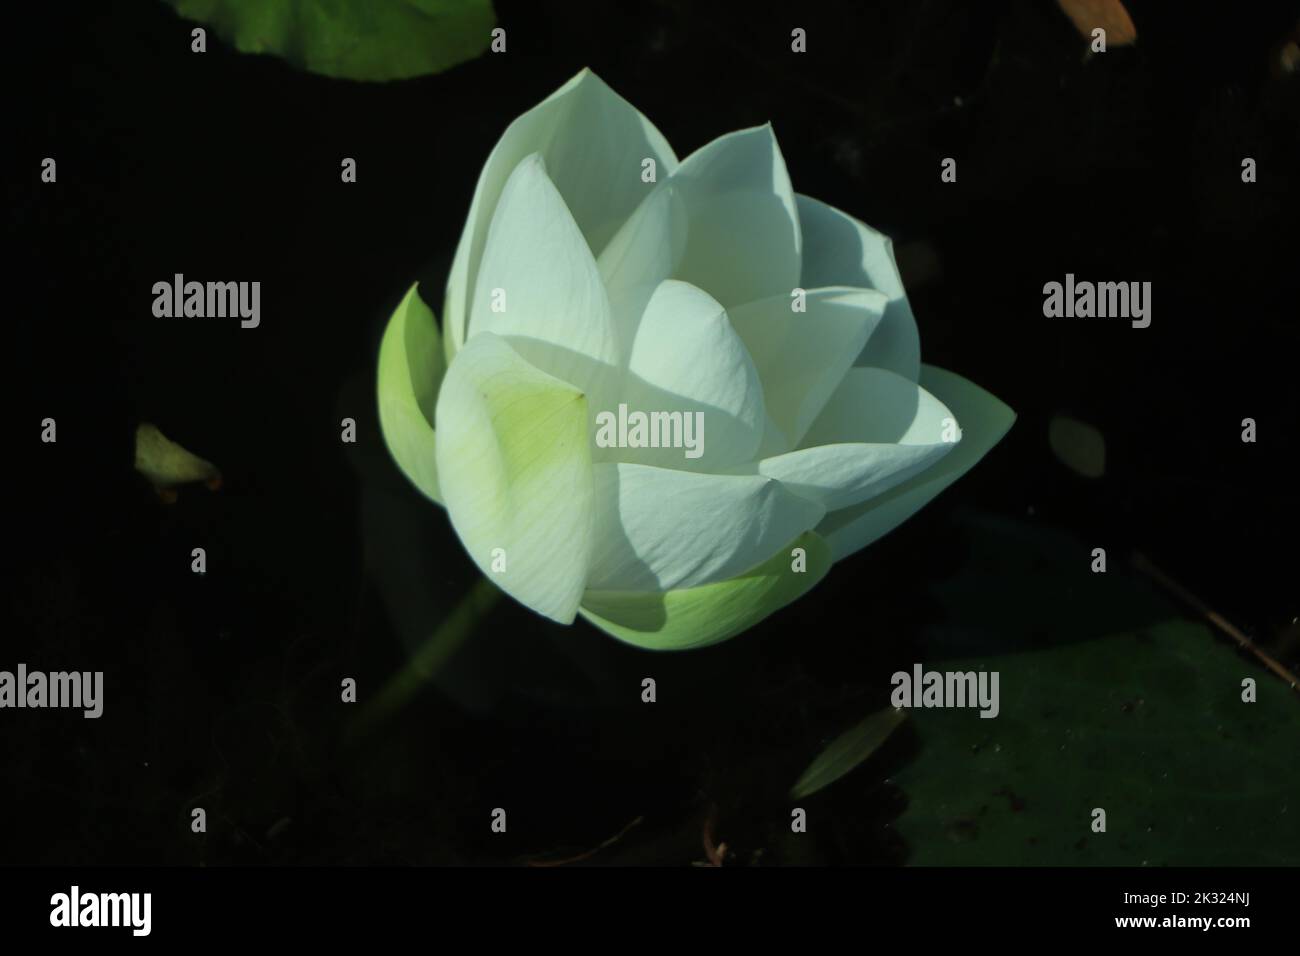 Fleur de lotus blanc ou nénuphars. Image libre de droits de haute qualité de fleur de lotus blanche. Le fond est la feuille de lotus et le bourgeon de lotus dans un étang. Banque D'Images